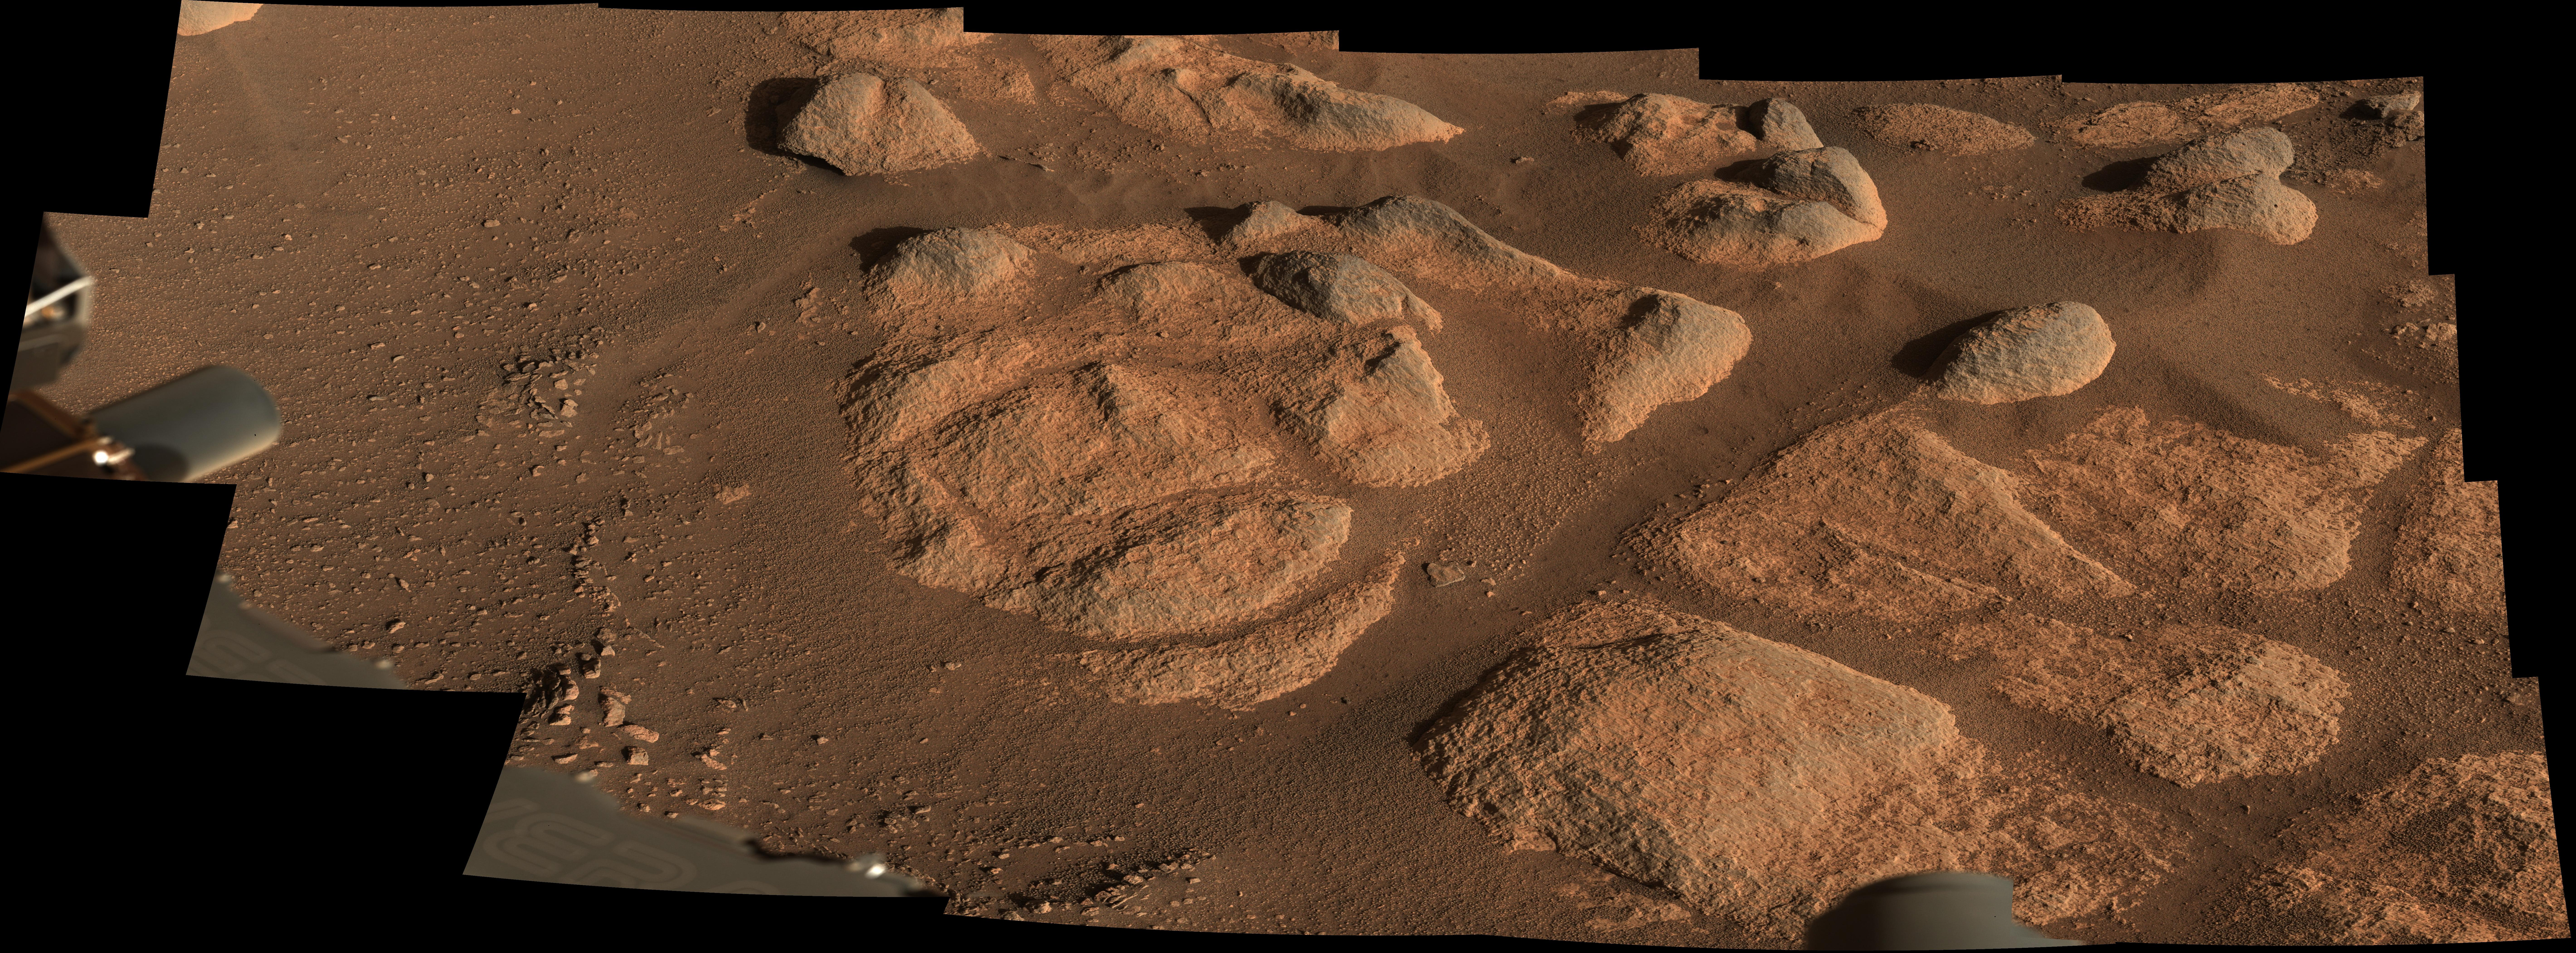 Depuis 18 mois, le rover Perseverance analyse sans relâche la géologie du cratère martien Jezero. © Nasa, JPL-Caltech, ASU, MSSS